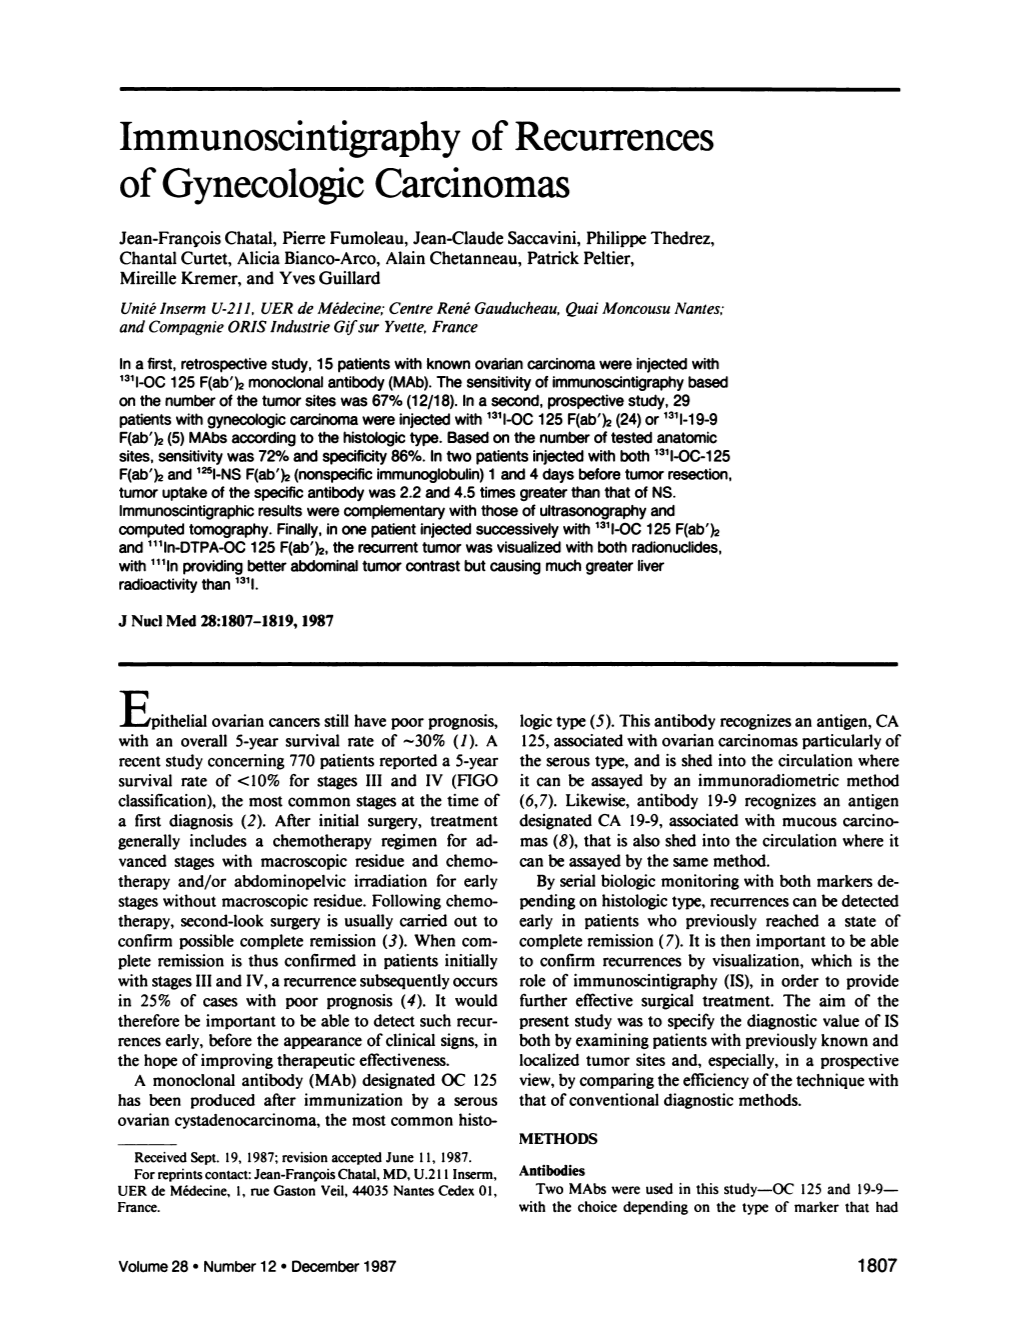 Immunoscintigraphy of Recurrences of Gynecologic Carcinomas